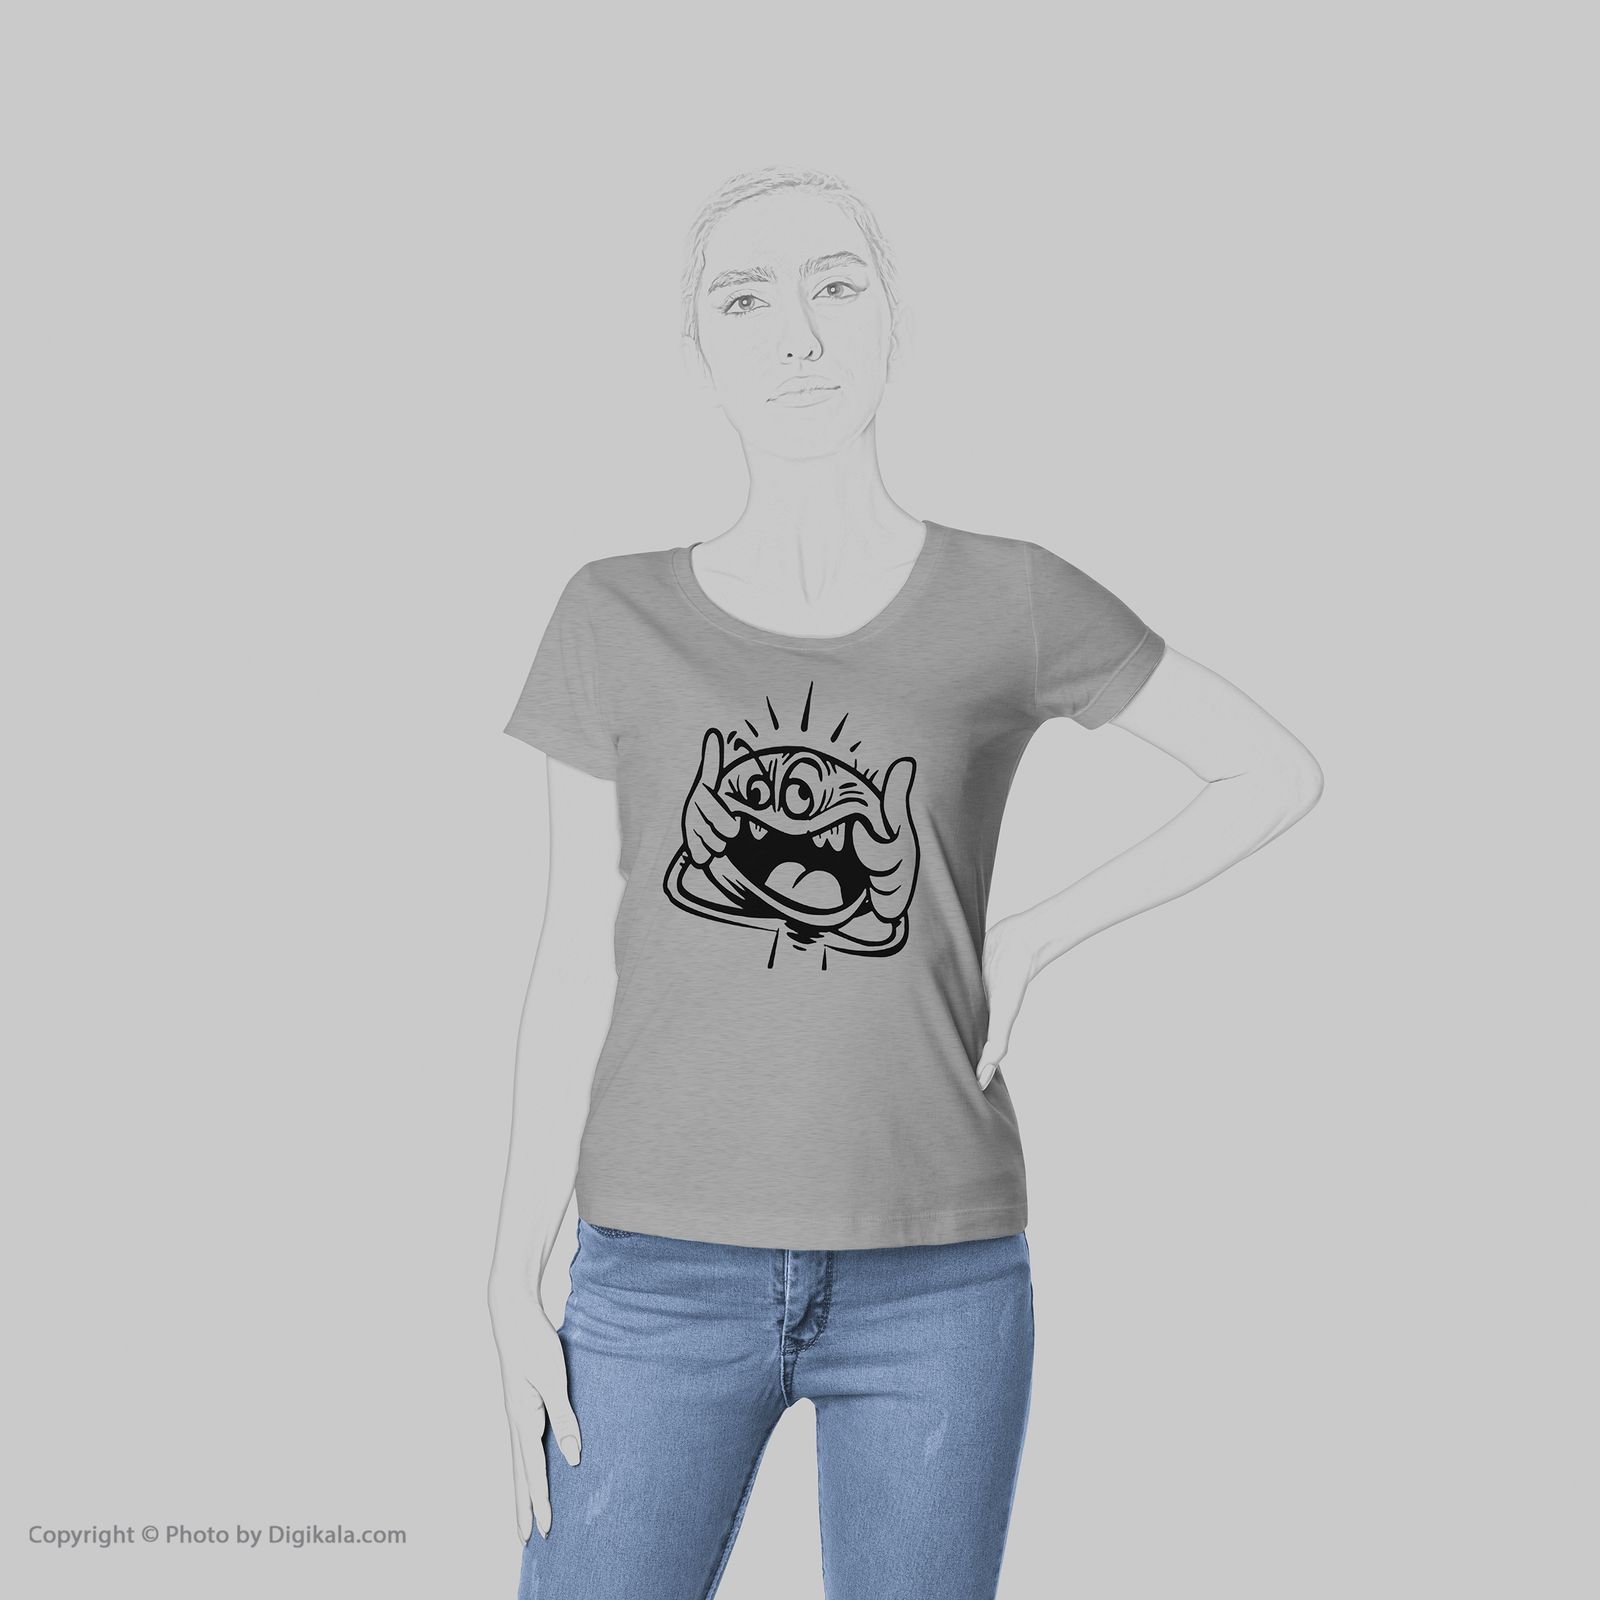 تی شرت زنانه به رسم طرح استیکر کد 411 -  - 6